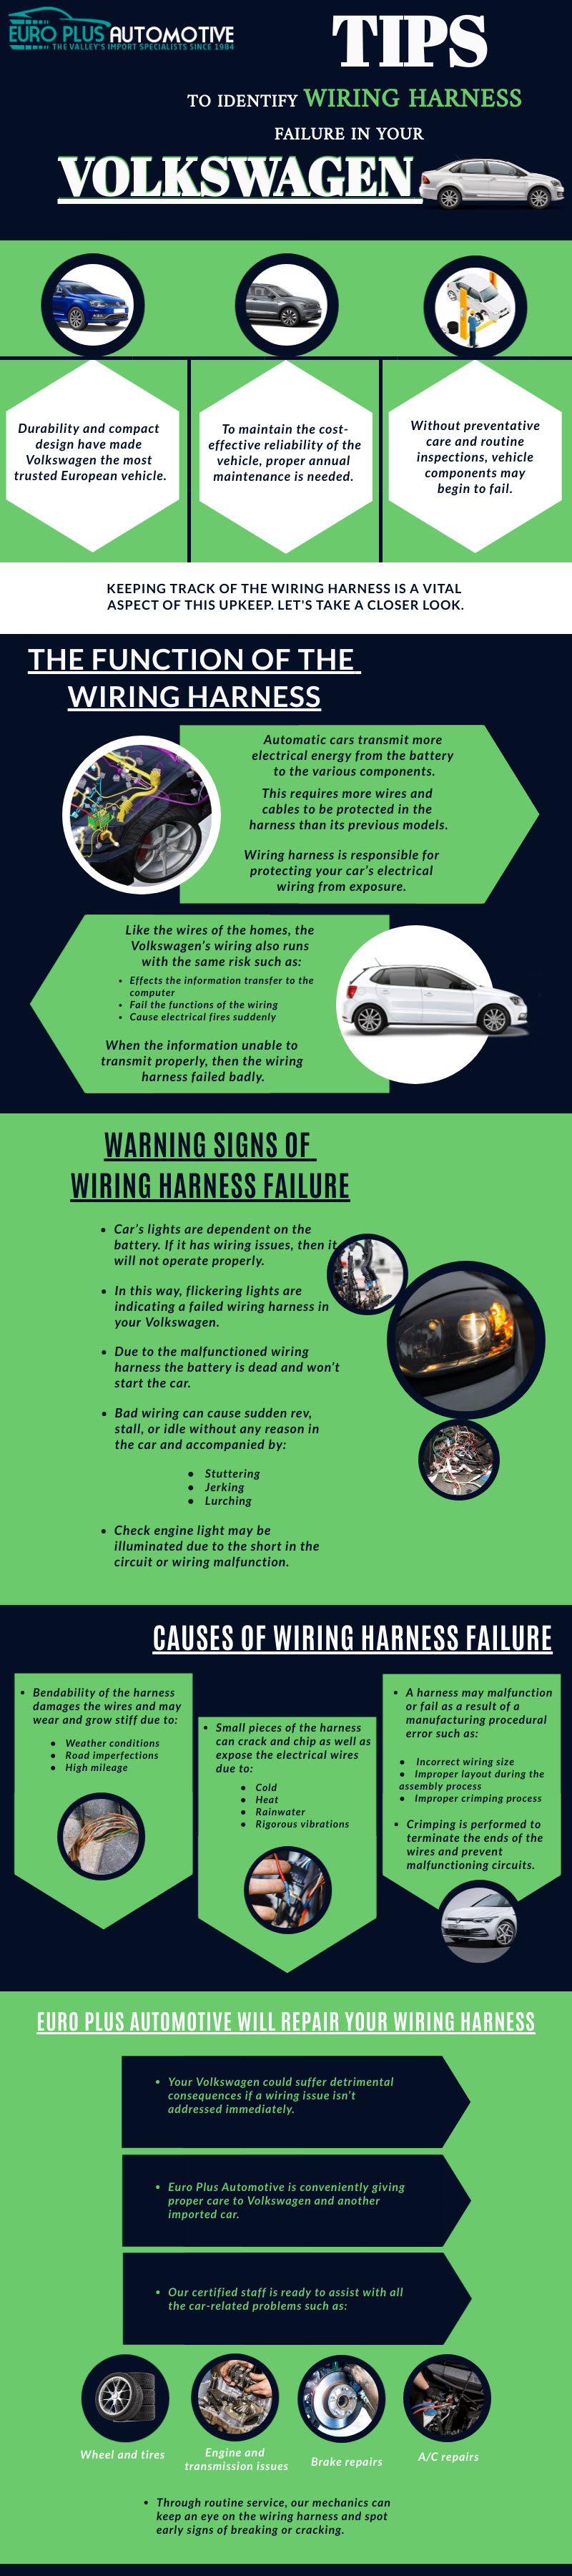 Volkswagen Wiring Harness Failure Identification